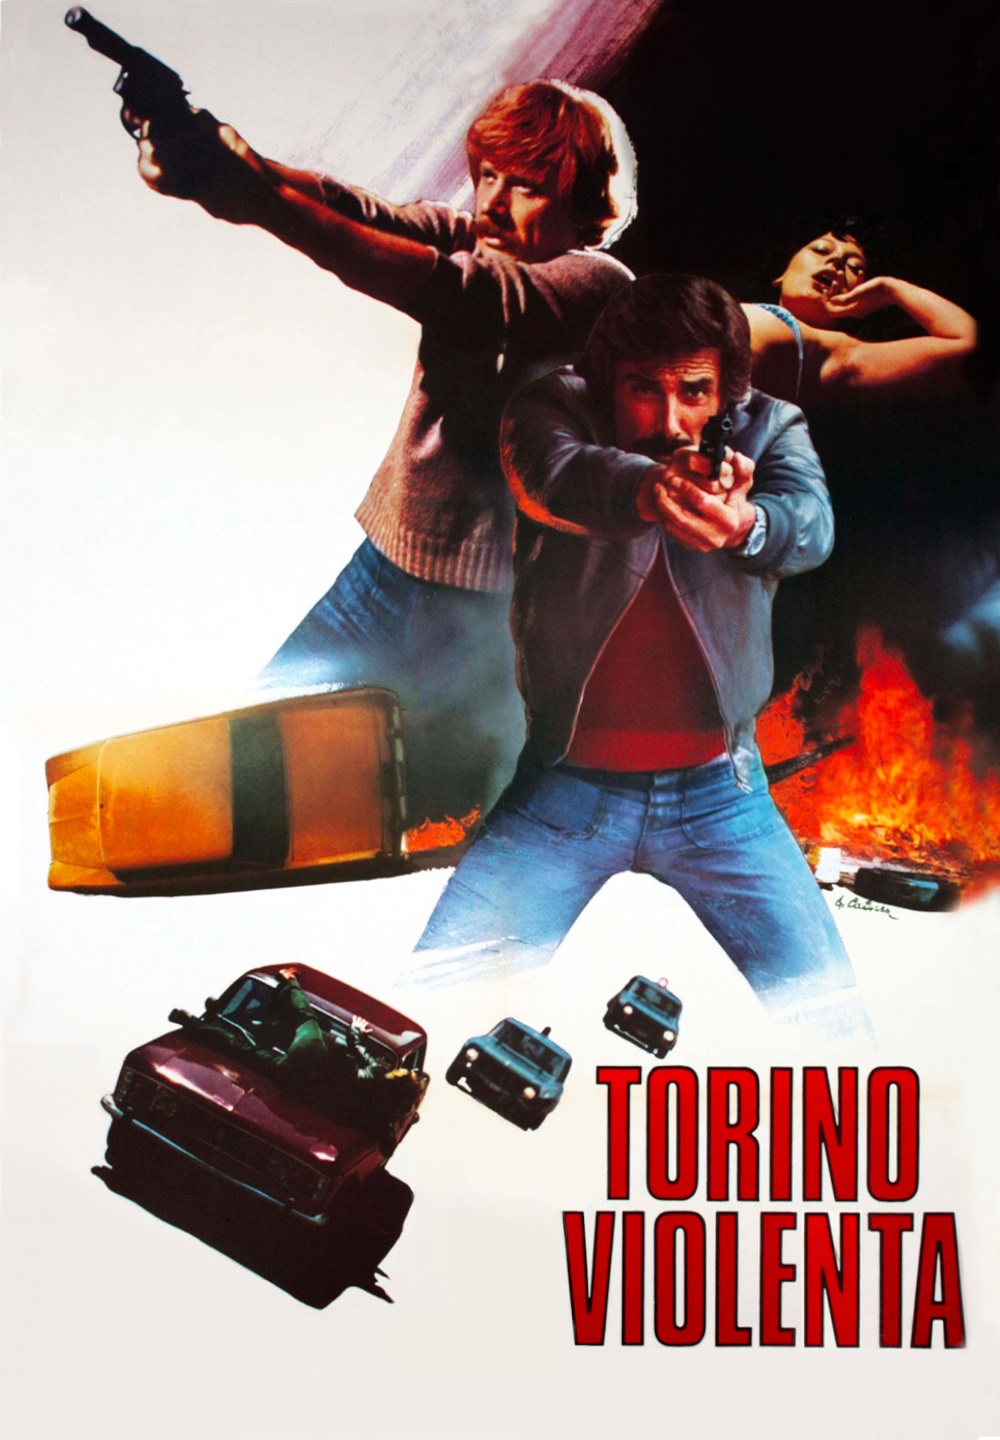 Torino violenta [HD] (1977)